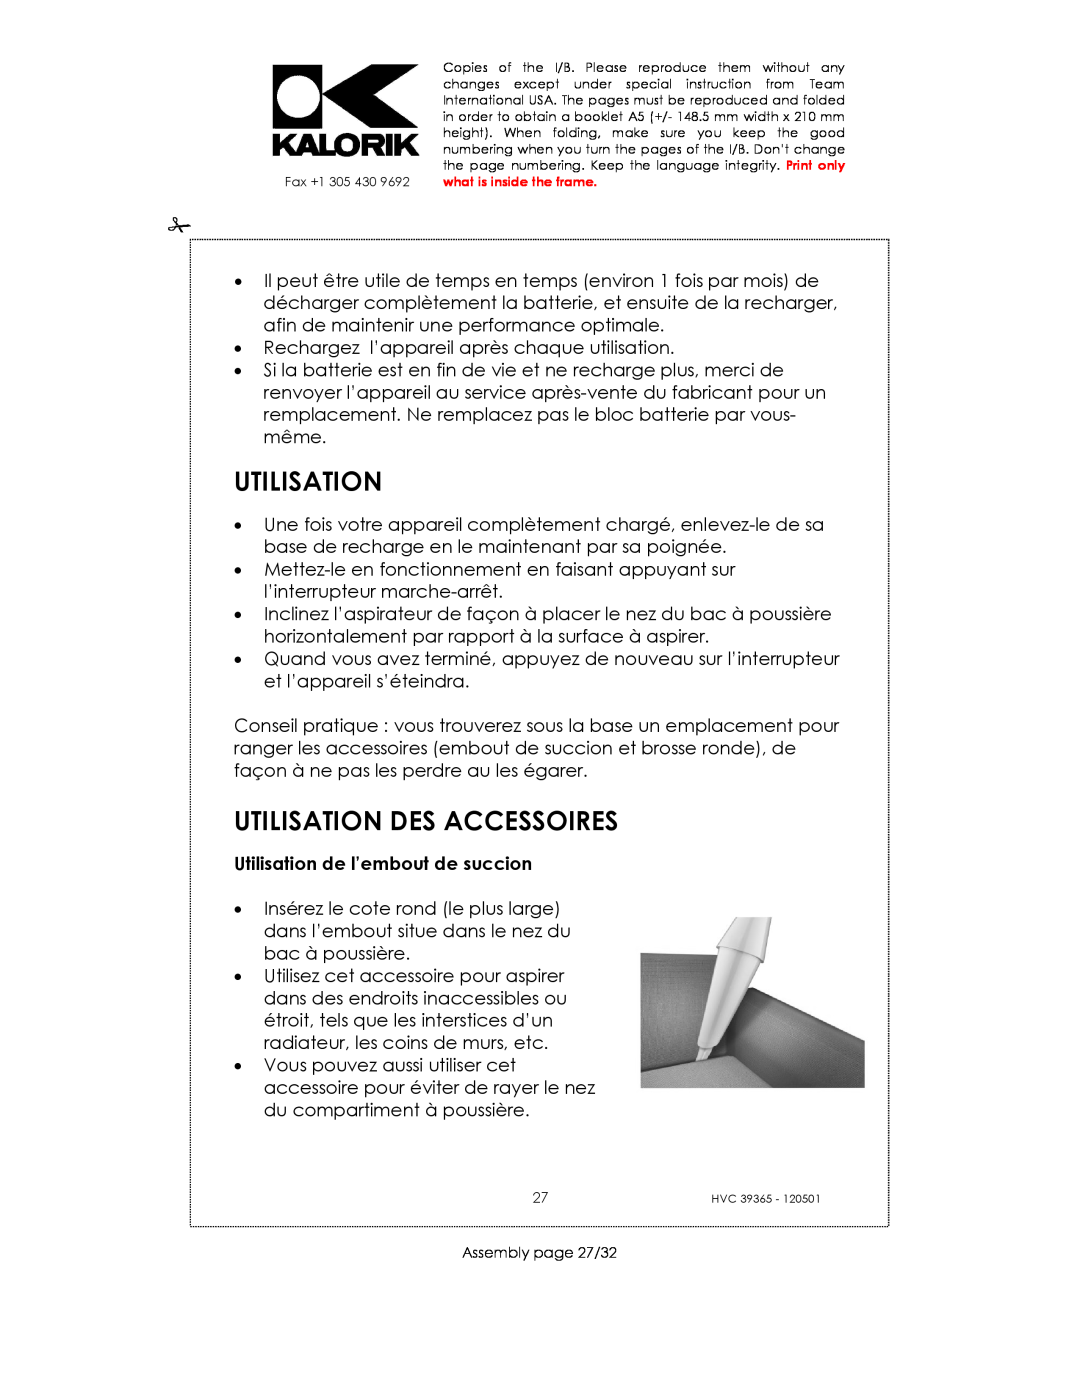 Kalorik HVC 39365 manual Utilisation Des Accessoires, Utilisation de l’embout de succion 